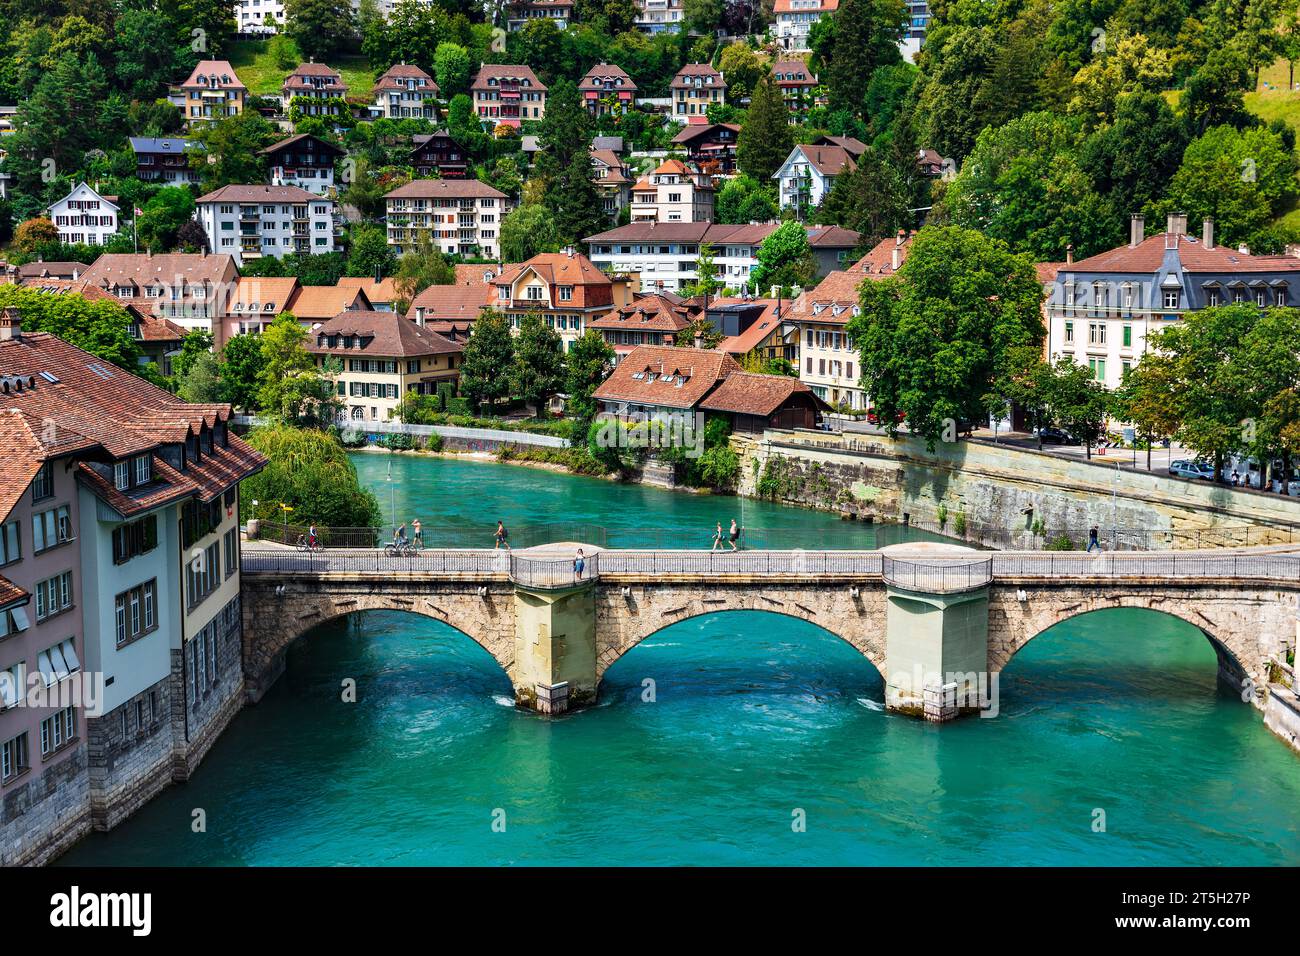 Enchanting Bern: Where History Meets Scenic Beauty Stock Photo